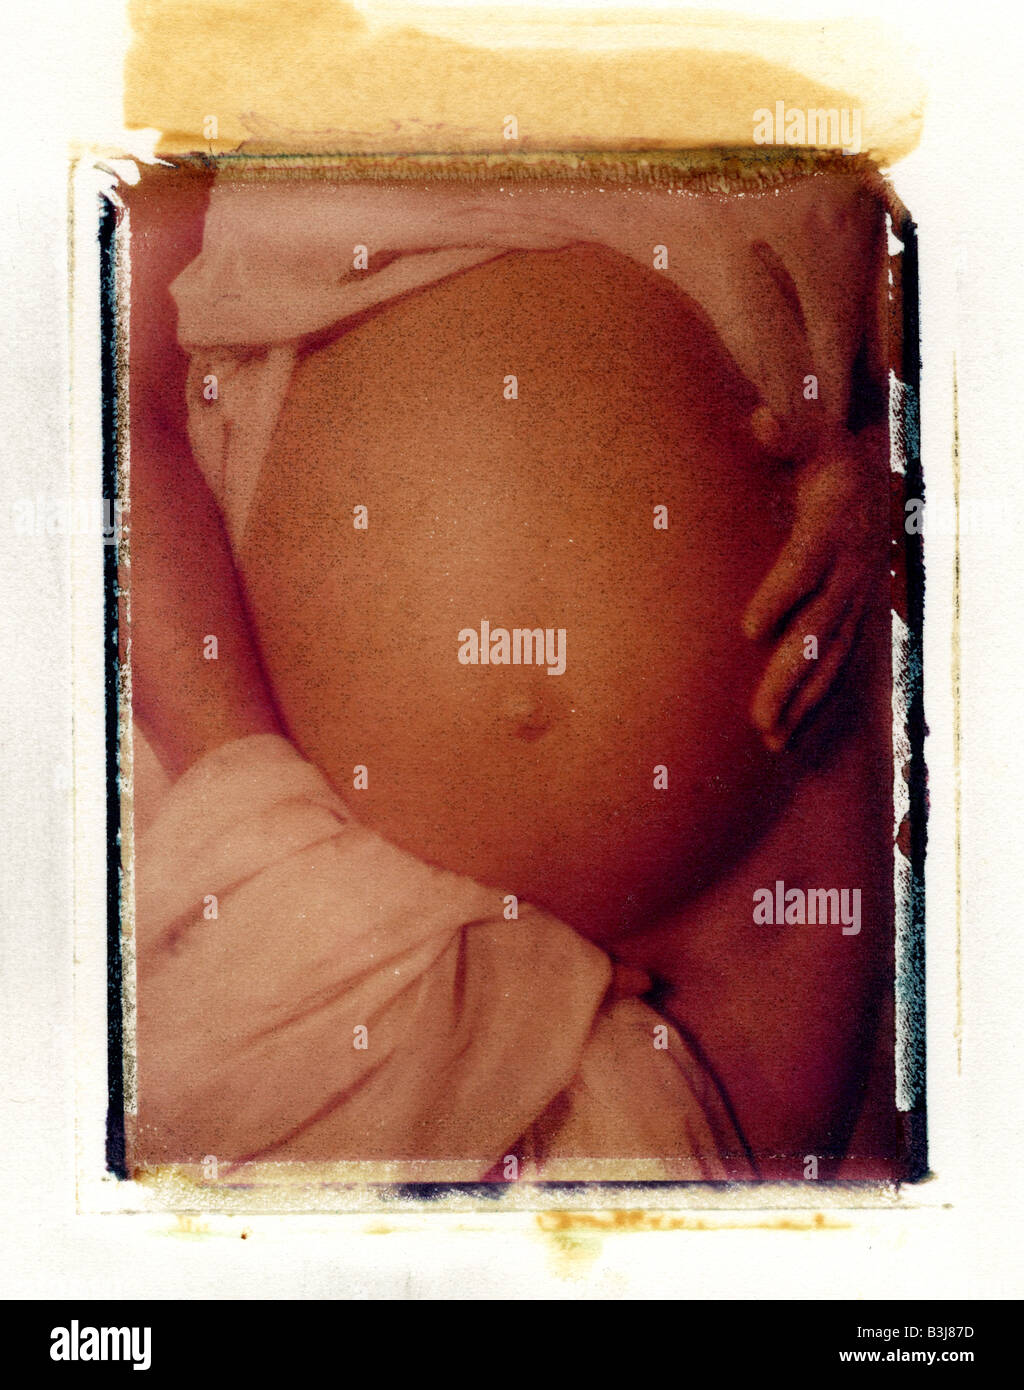 geschmackvolle Bild von schwangeren Frauen Bauch Stockfoto